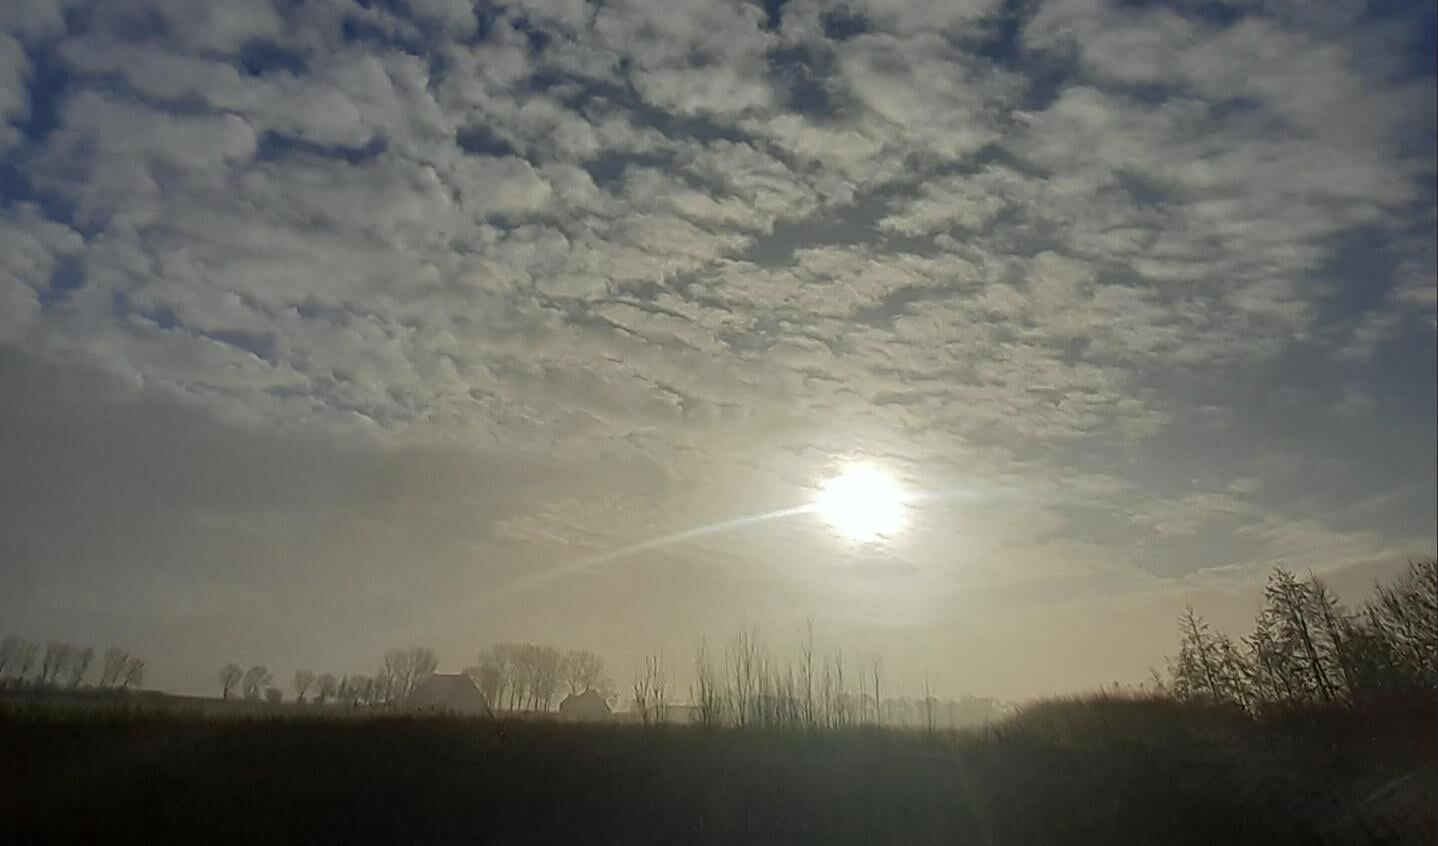 We hebben gelukkig de prachtige Friese wolkenluchten nog, het is weer een heerlijke zonnige zondag.